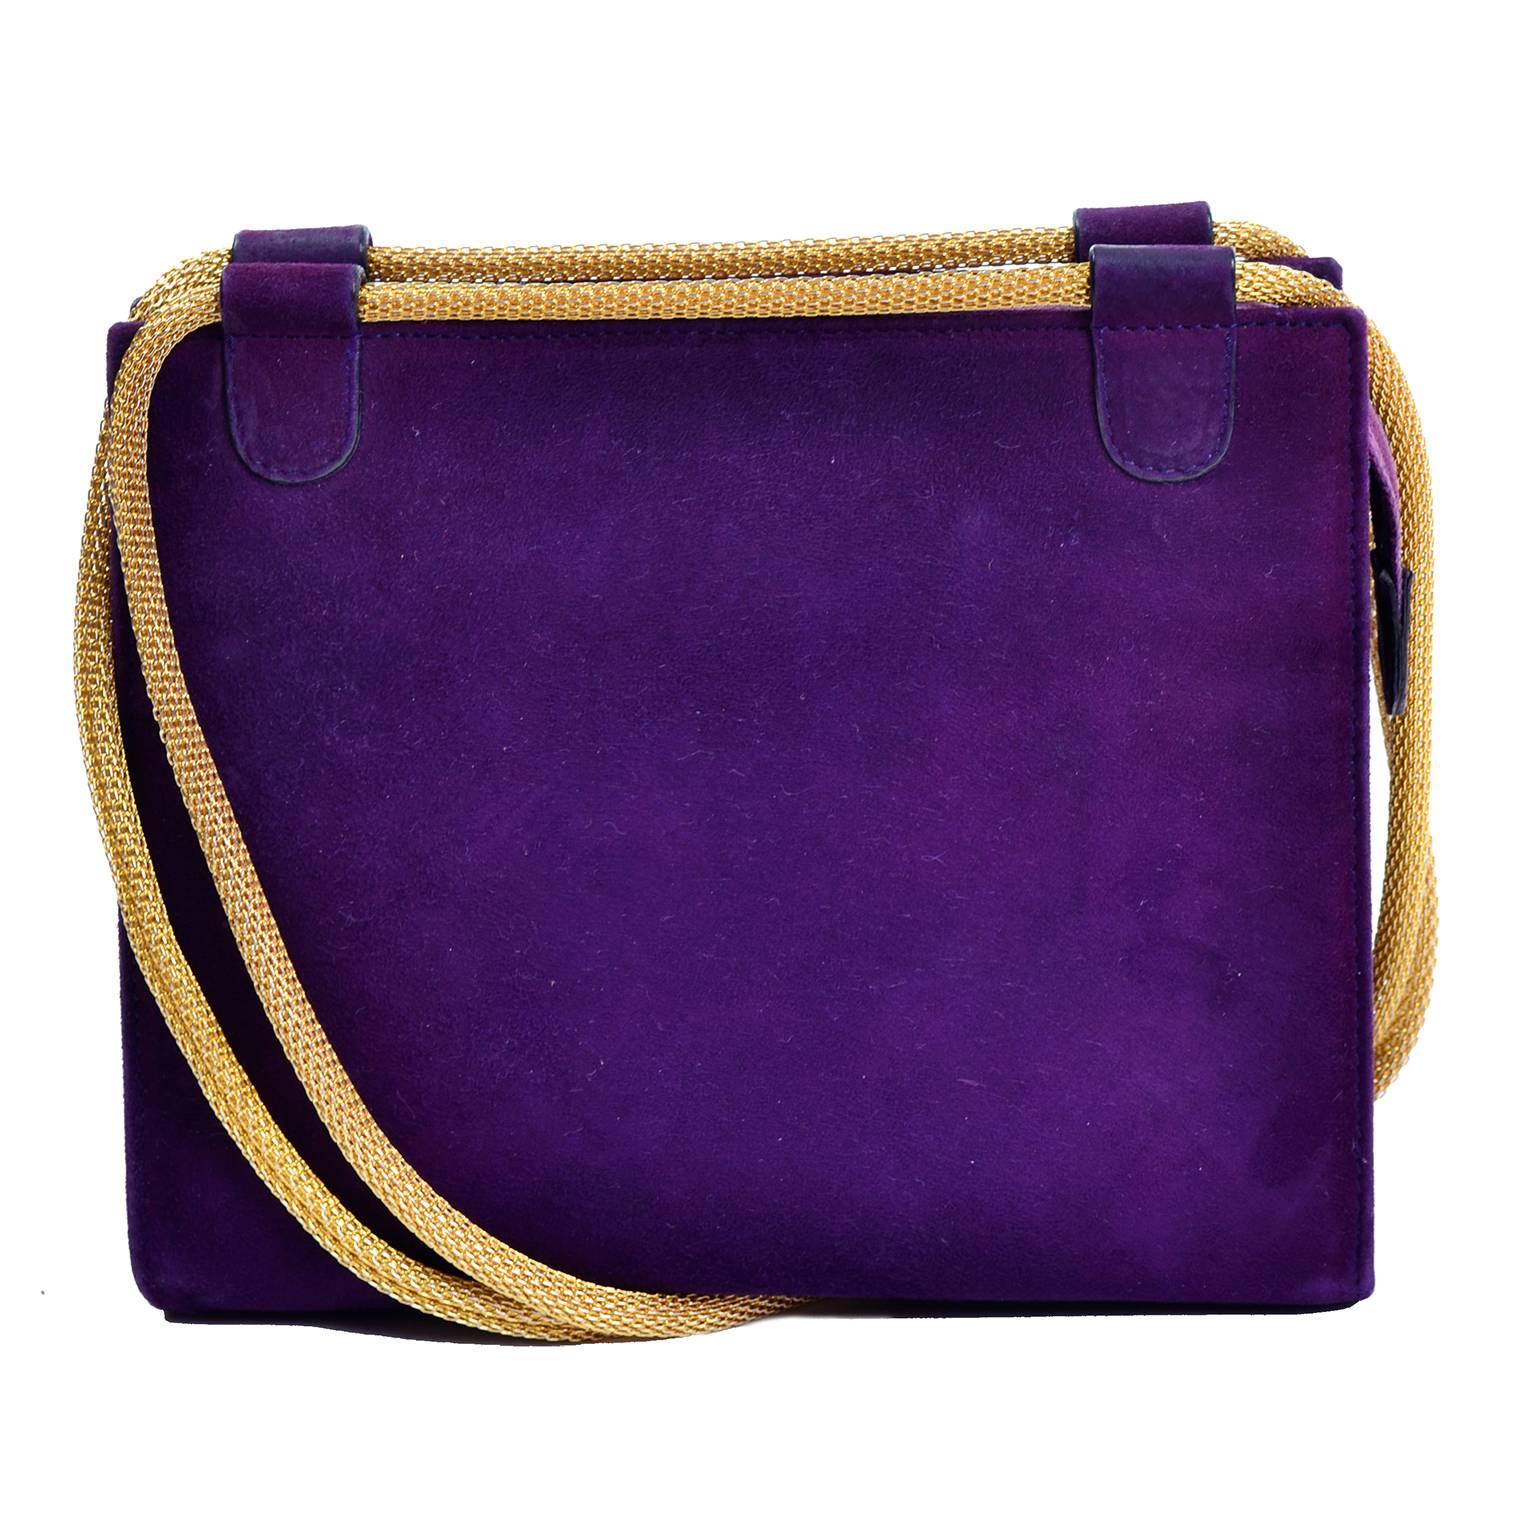 purple suede handbags